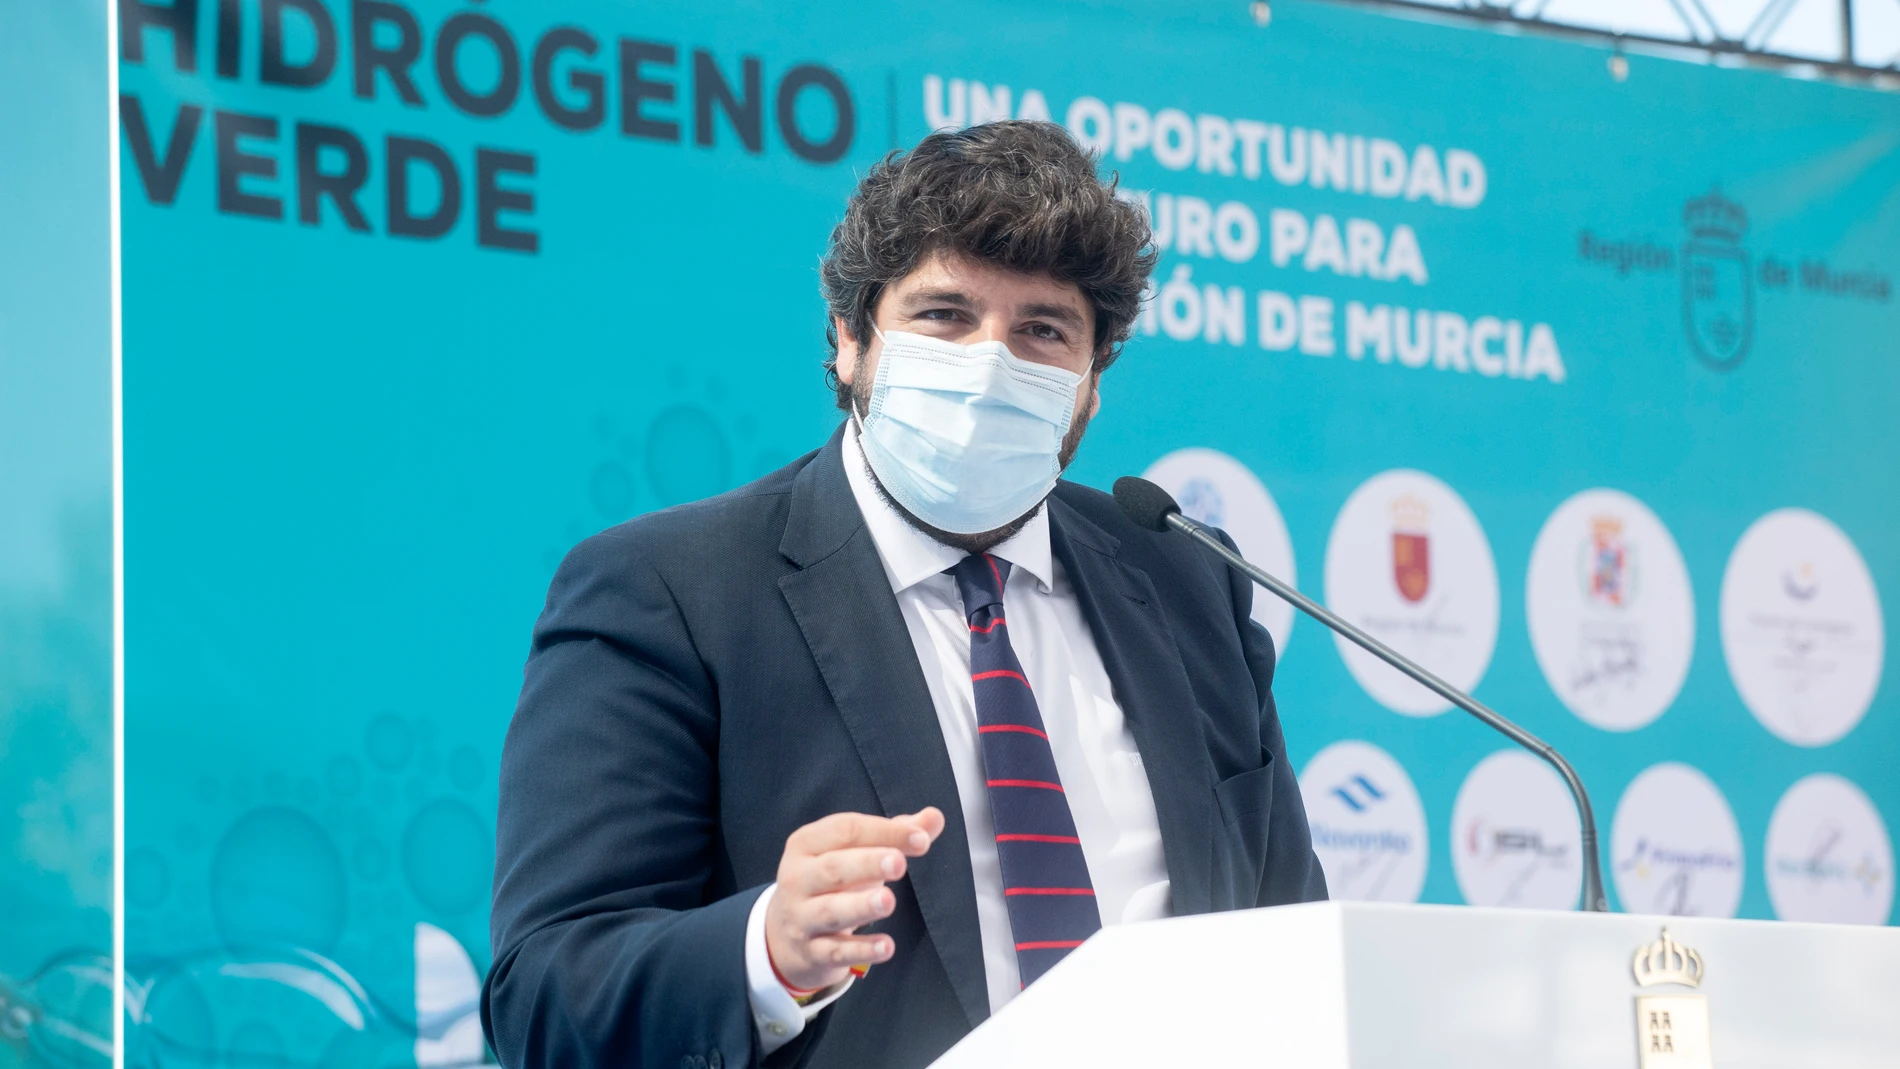 López Miras anuncia la creación de la Plataforma del Valle del Hidrógeno Verde de la Región de Murcia para el desarrollo coordinado de esta energía limpia, especialmente en el valle de Escombreras